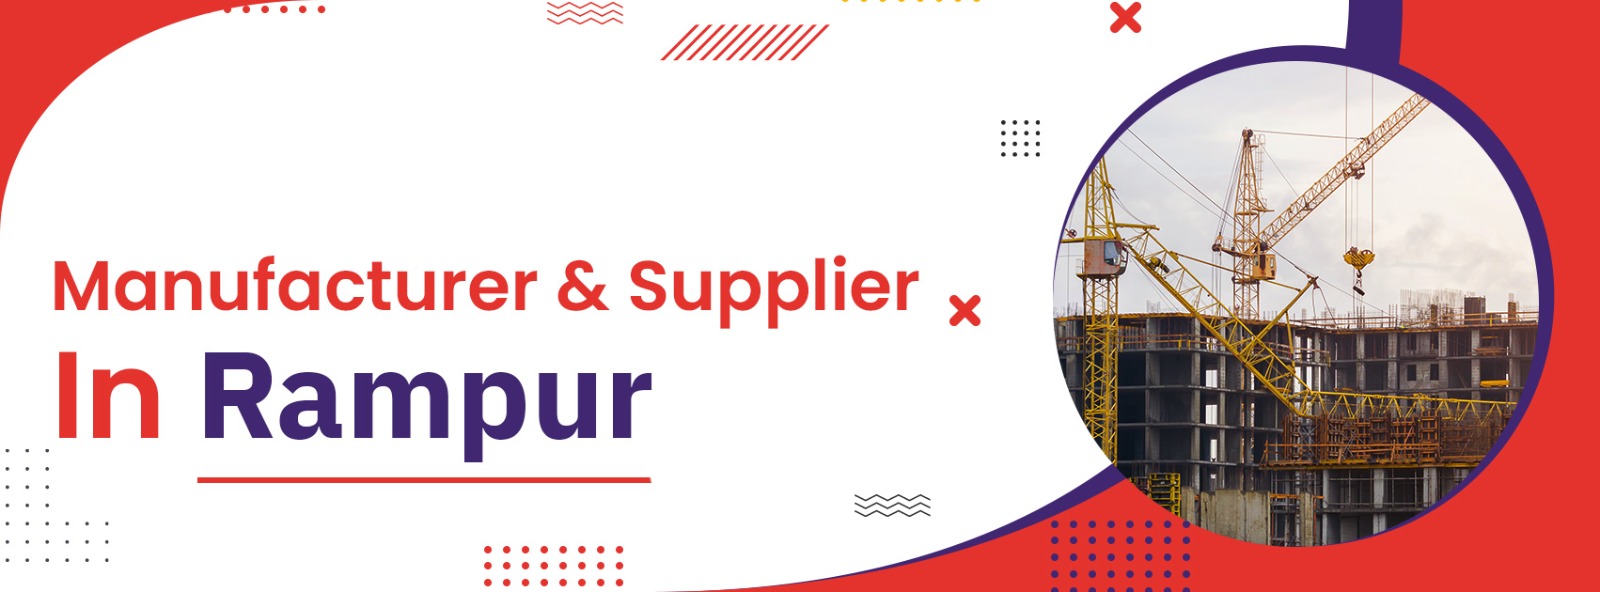 Scaffolding Mnaufacturer & Supplier In Rampur